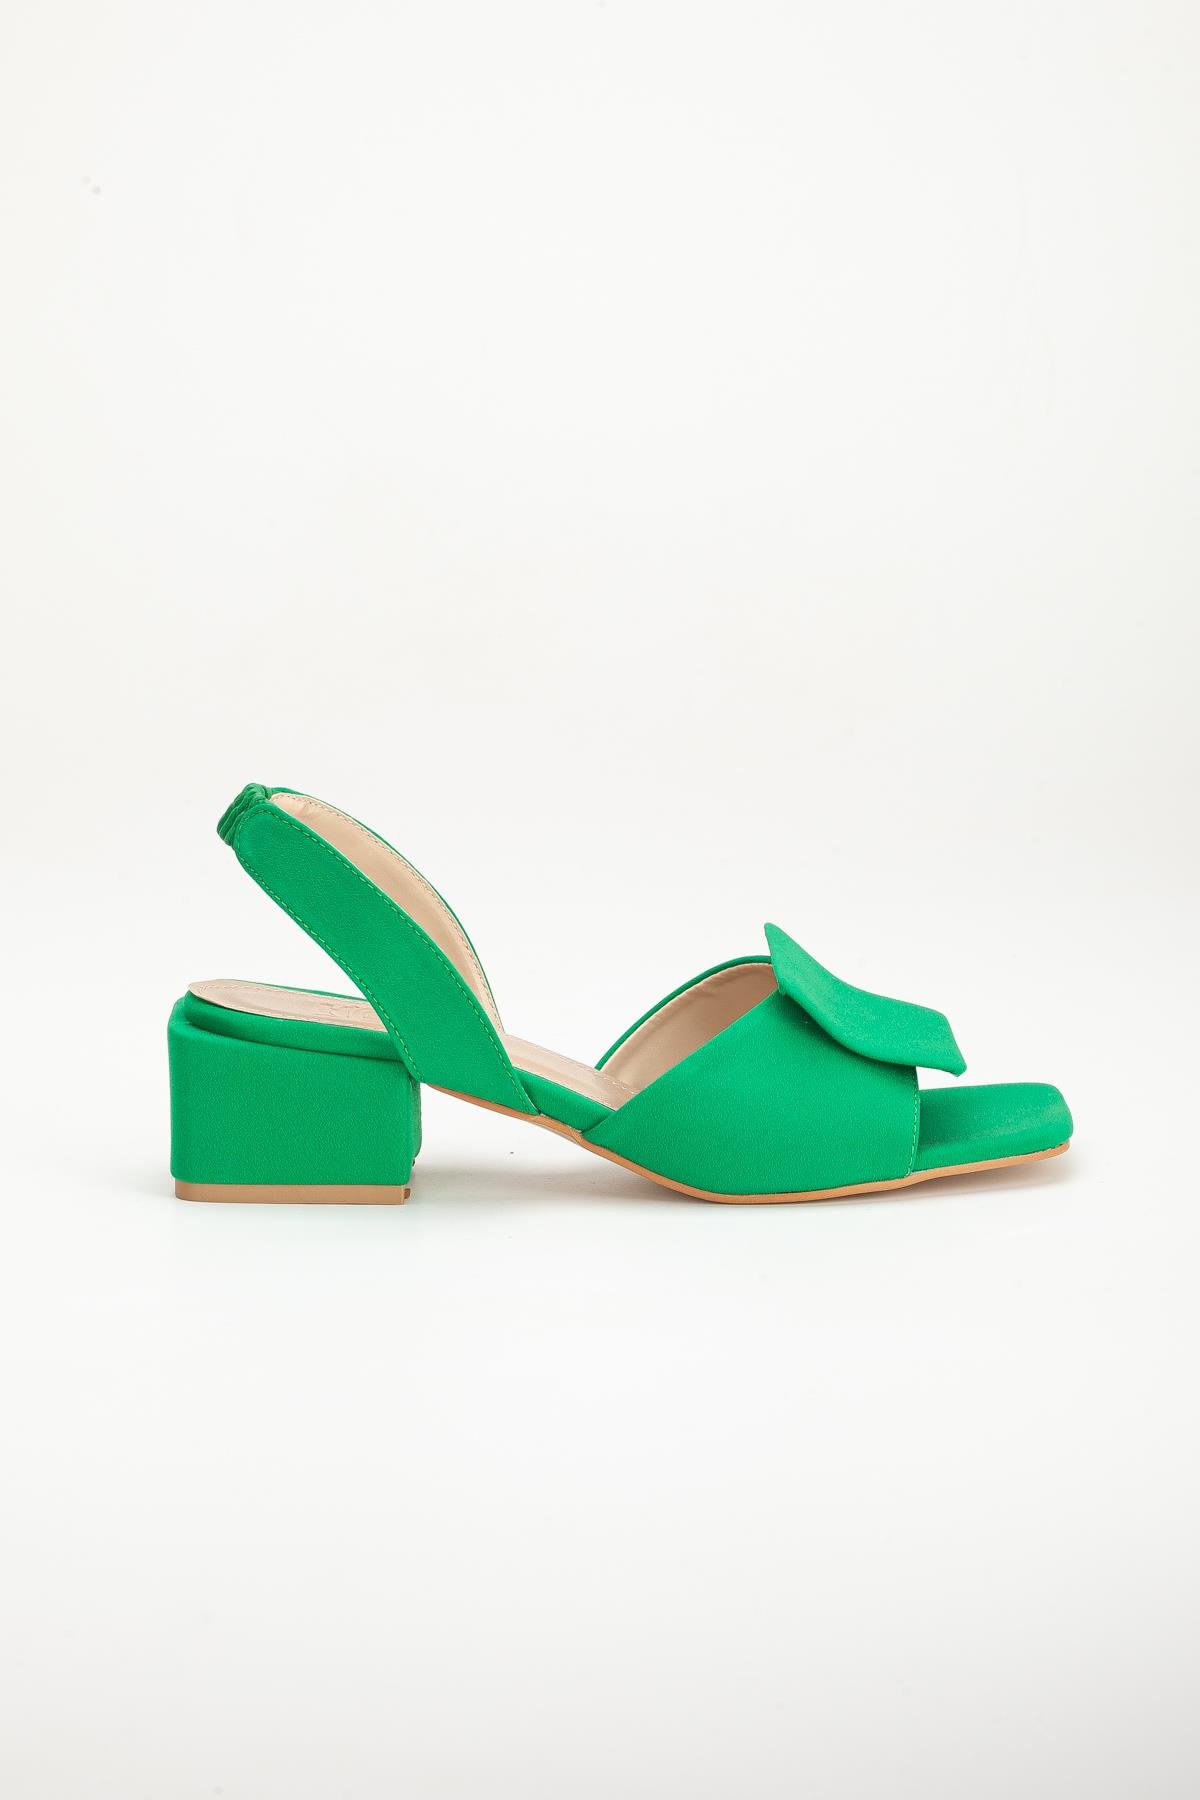 Zara Saten Kalın Tokalı Yeşil Kadın Topuklu Ayakkabı